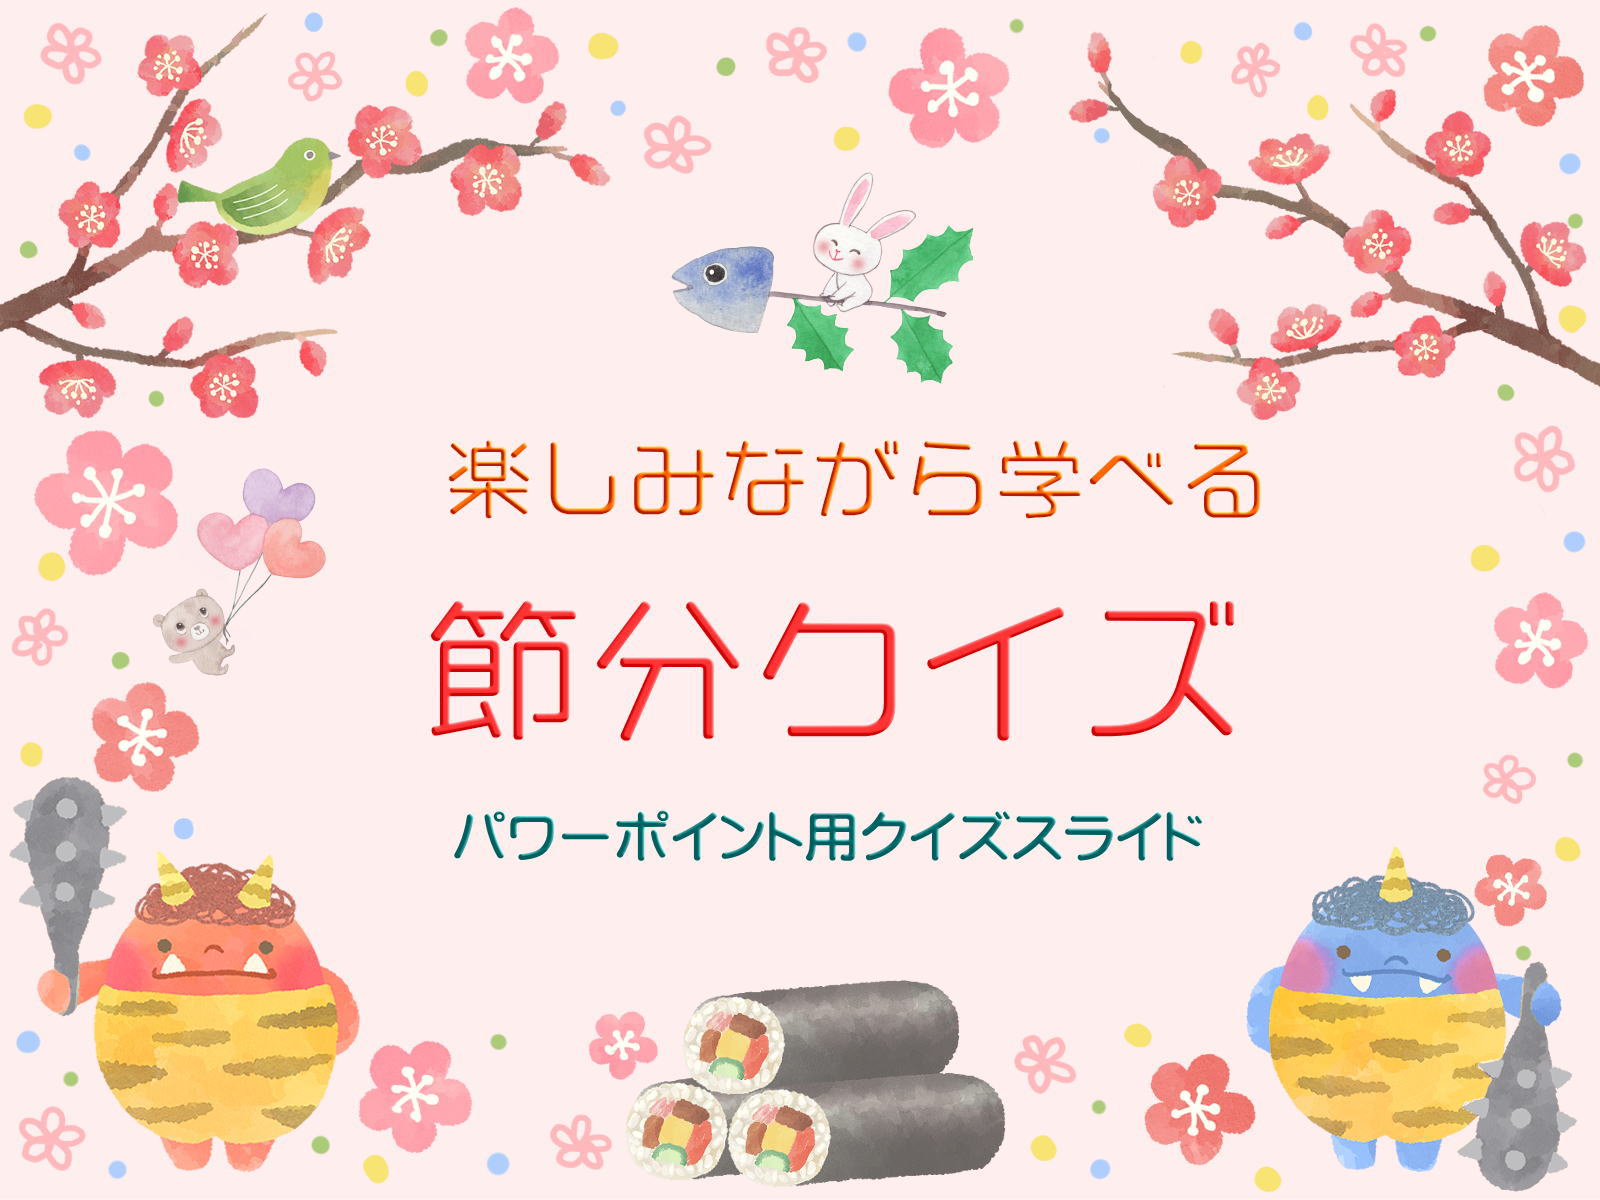 楽しみながら日本文化を学べる「節分クイズ」〔保存版〕